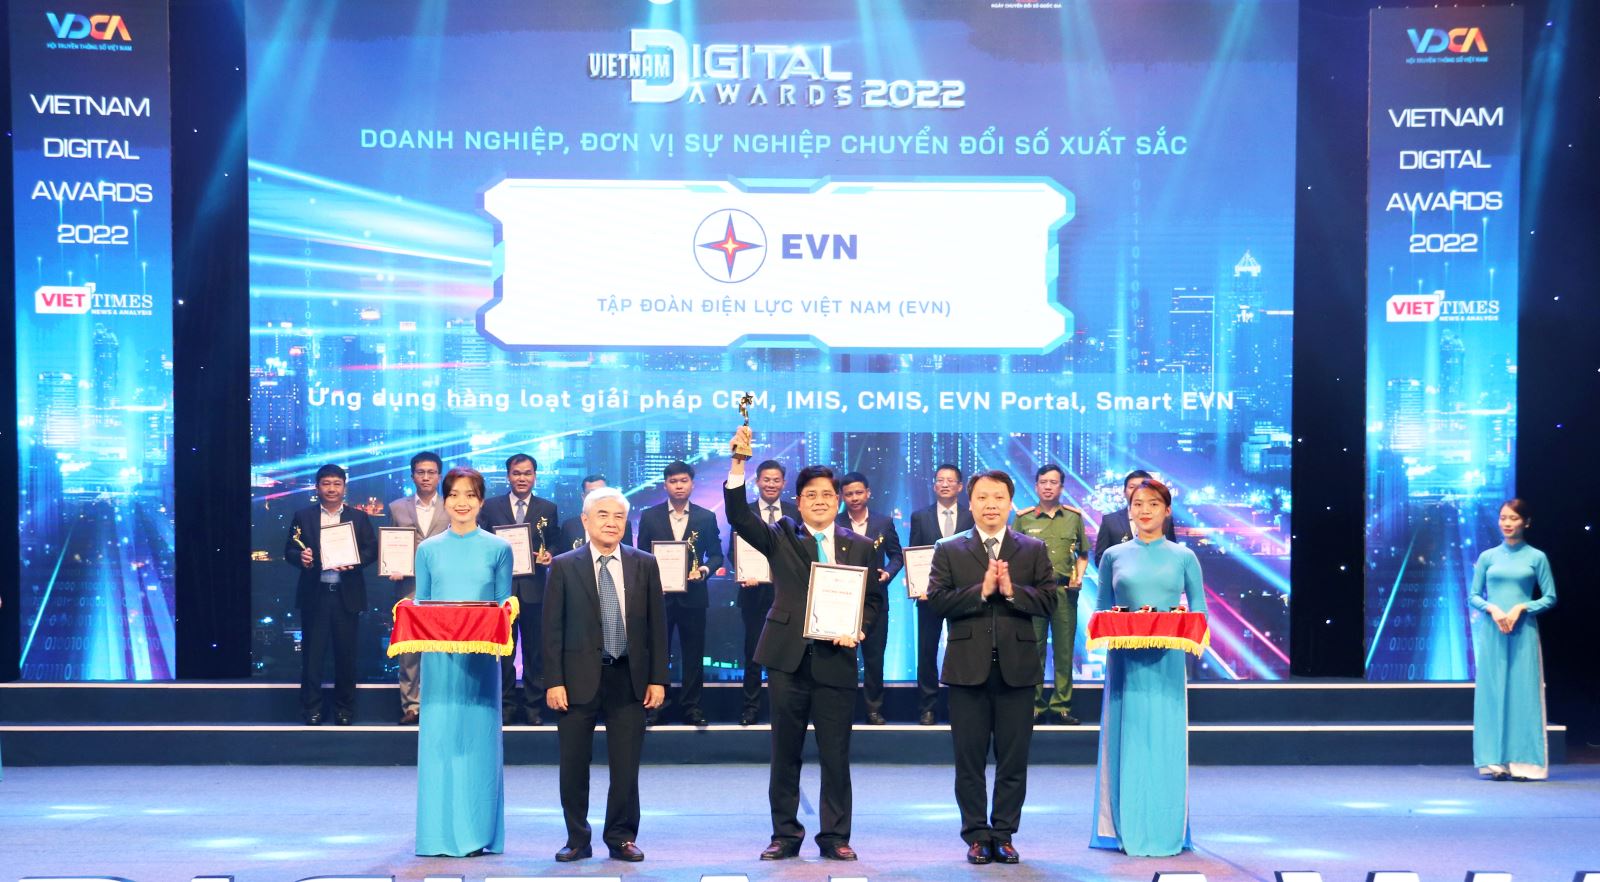 Ông Võ Quang Lâm, PTGĐ EVN đại diện cho EVN nhận giải thưởng tại buổi lễ.